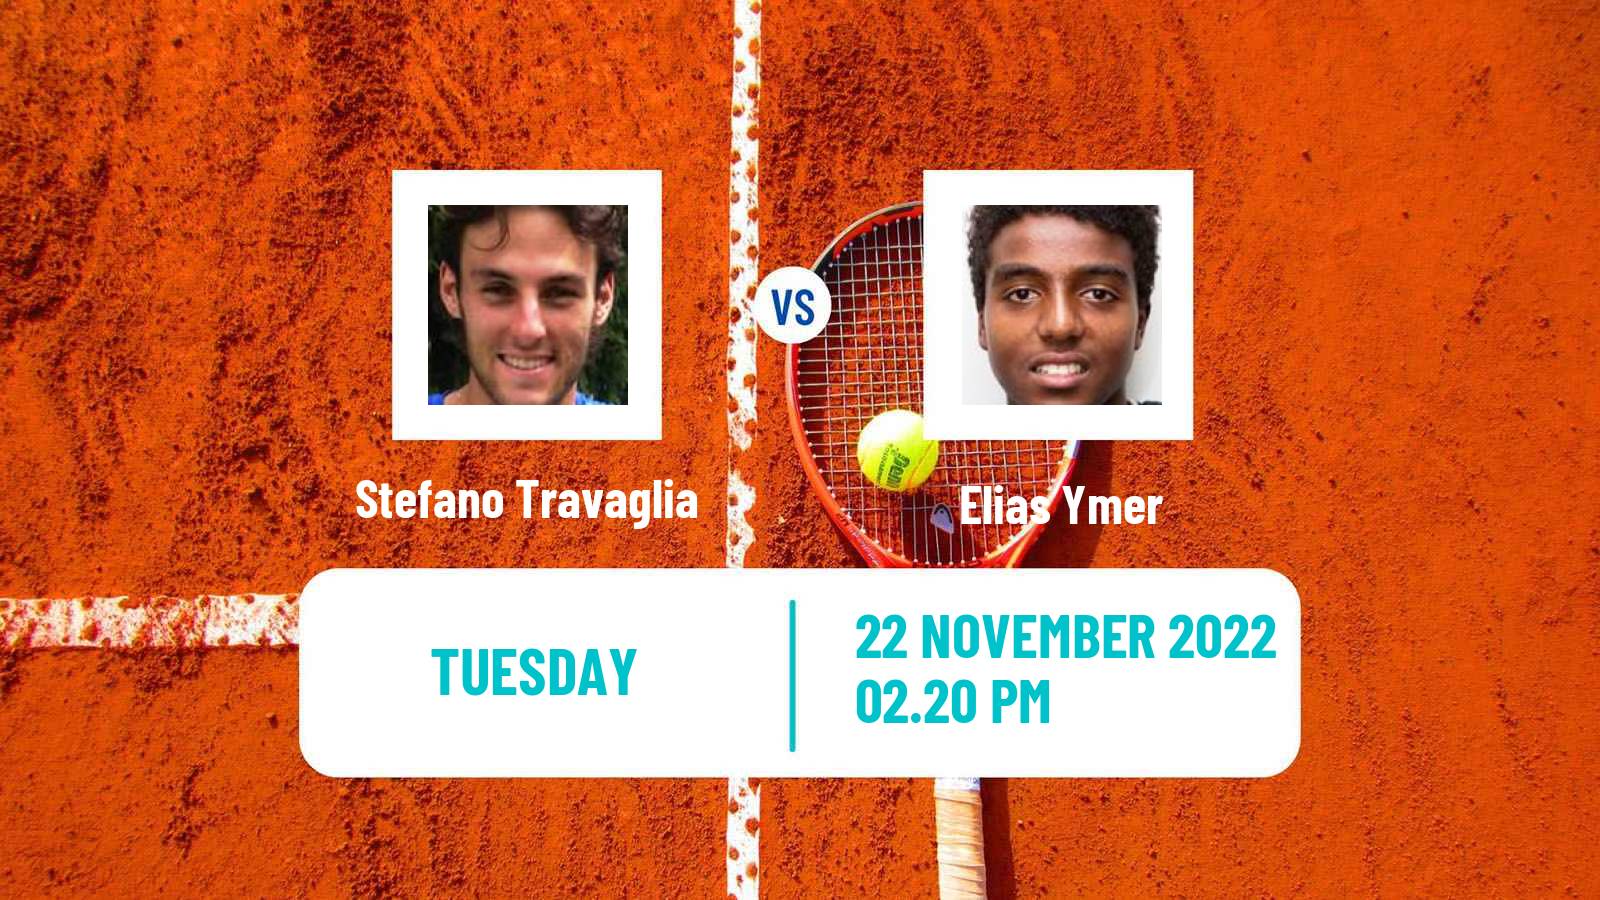 Tennis ATP Challenger Stefano Travaglia - Elias Ymer